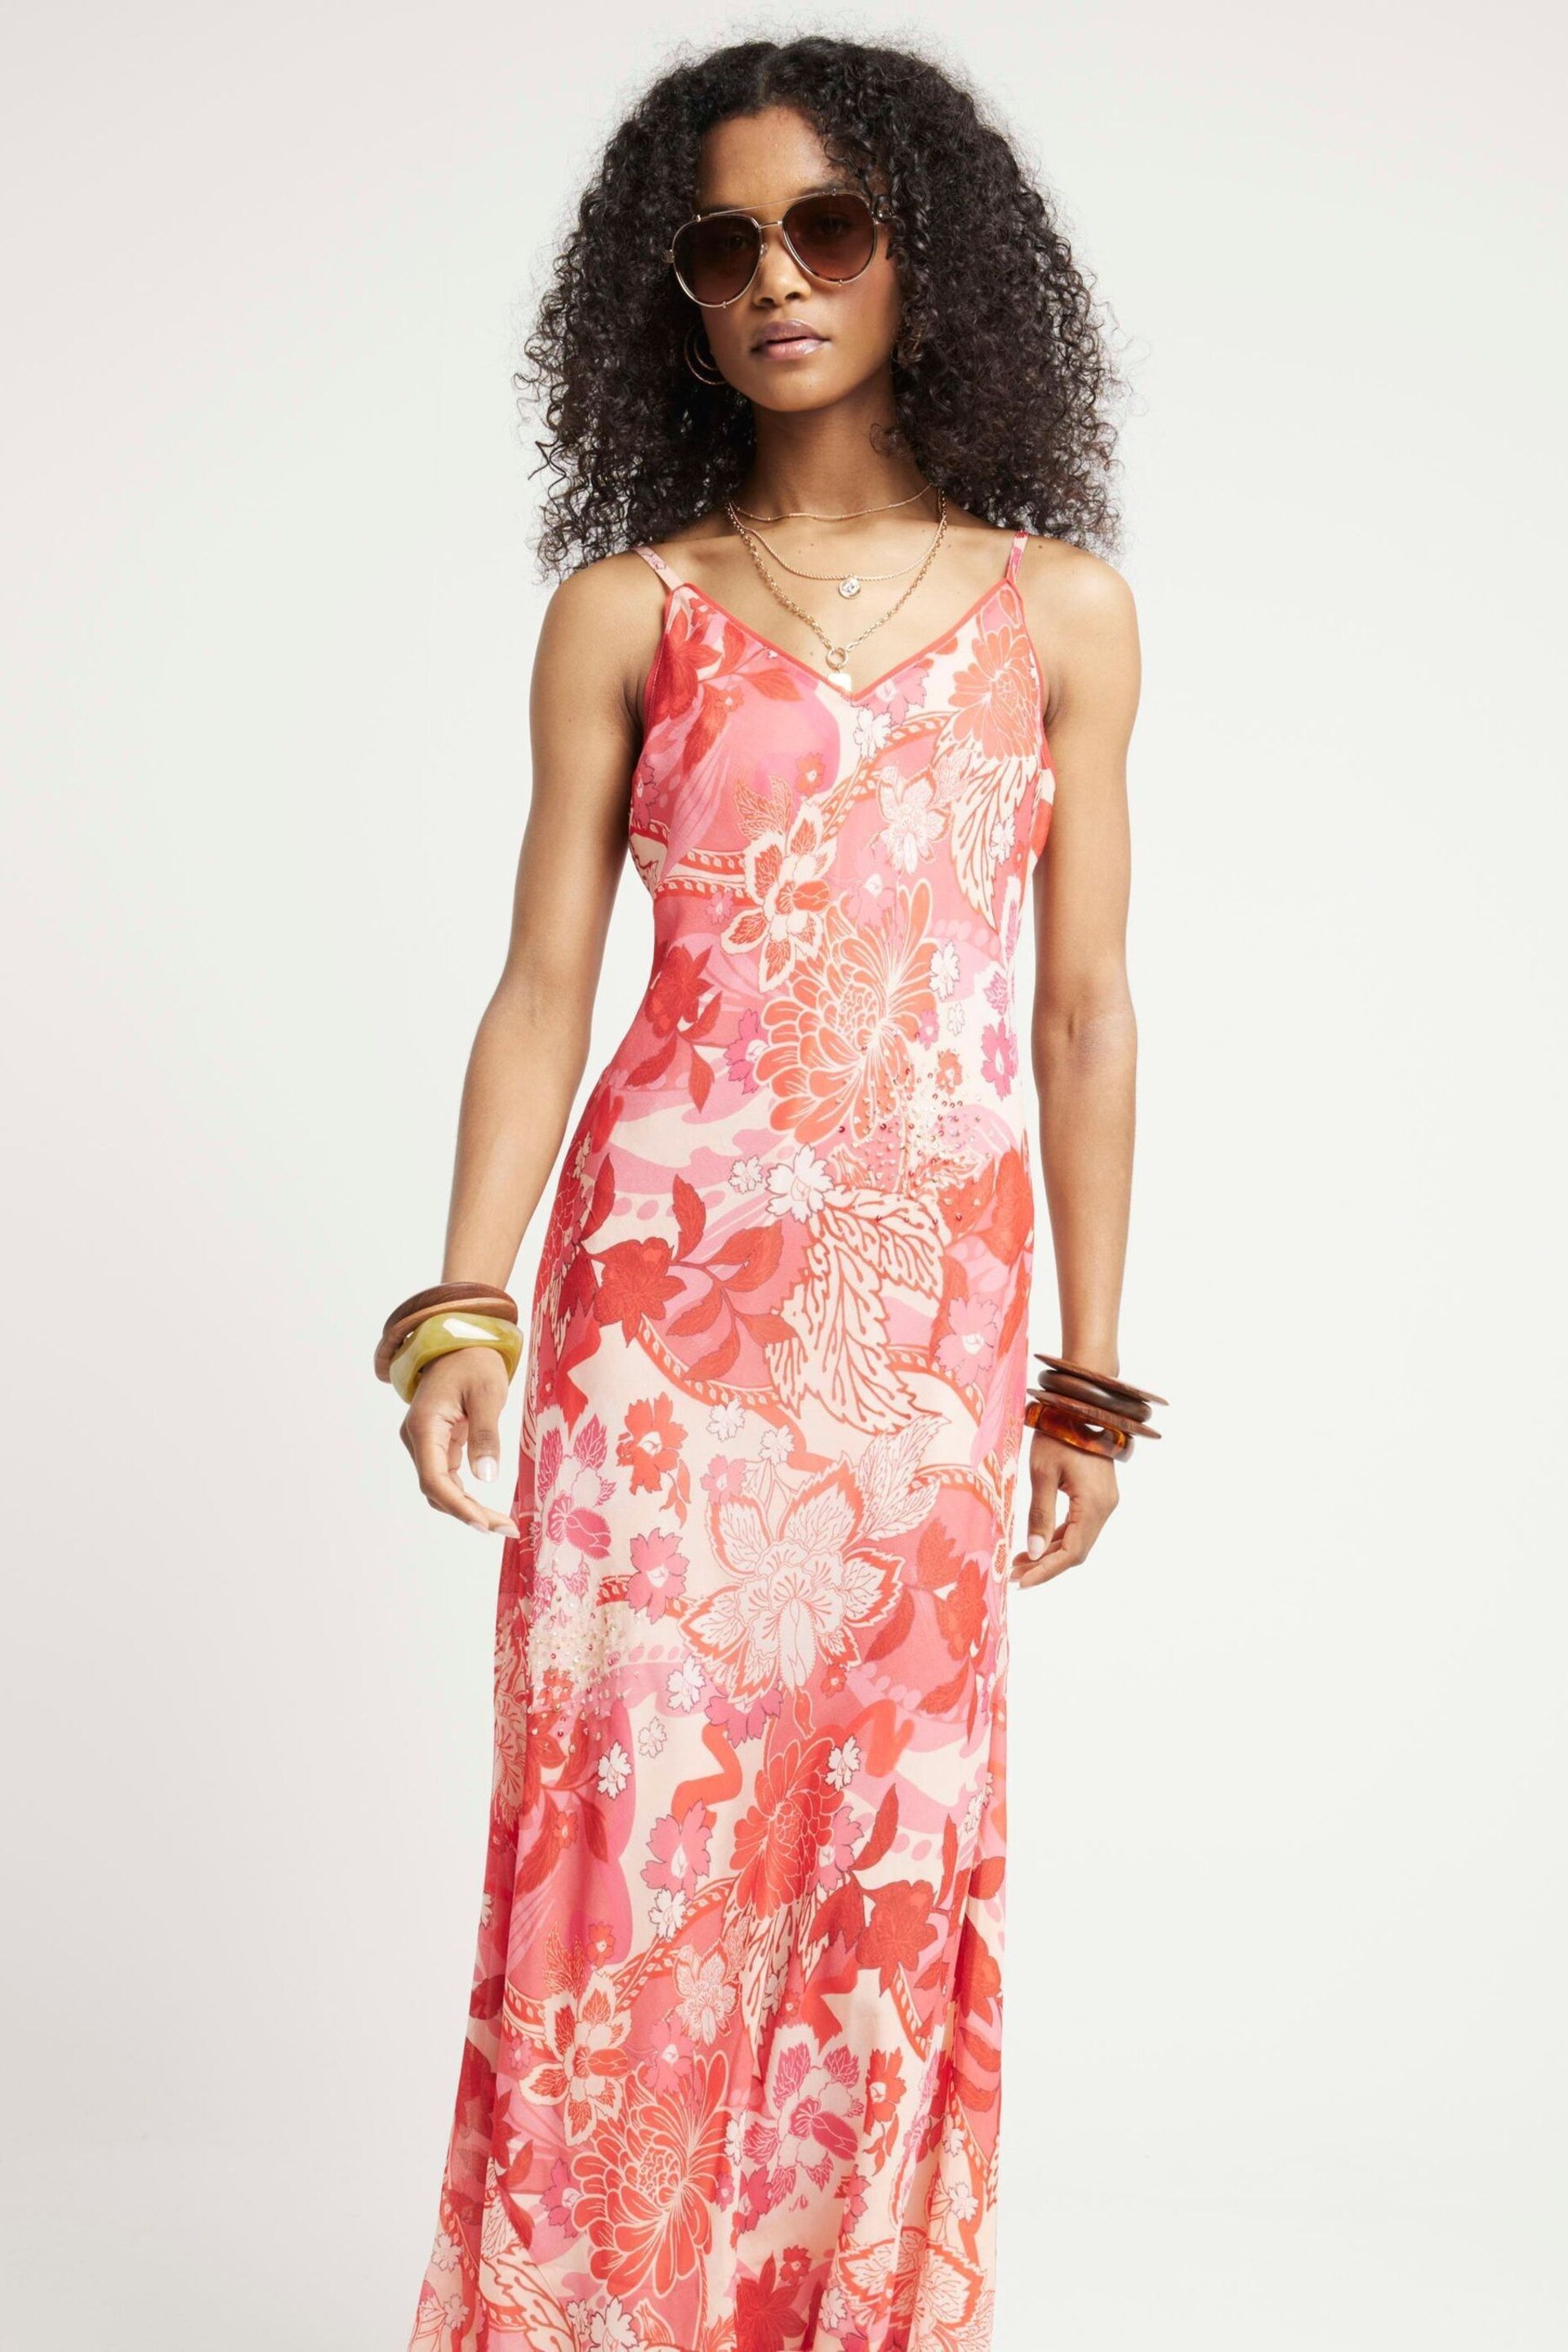 River Island Pink Embellished Leopard Print Slip Dress - Image 1 of 5